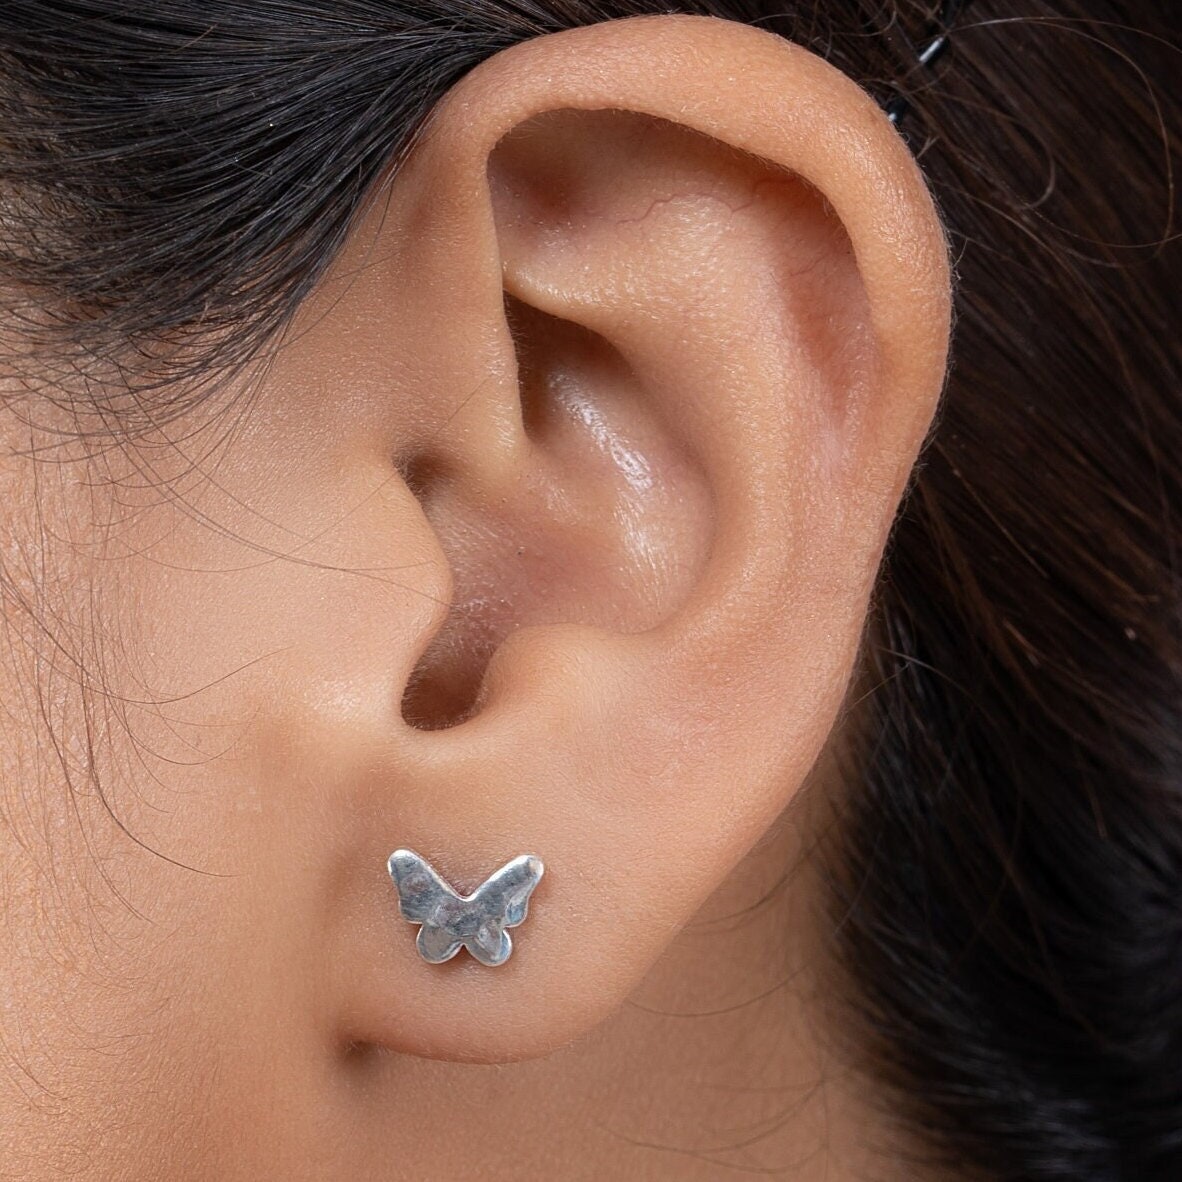 Buy Butterfly Huggie Earrings Sterling Silver Silver Hoop Earrings With  Butterfly Pendant Online in India - Etsy